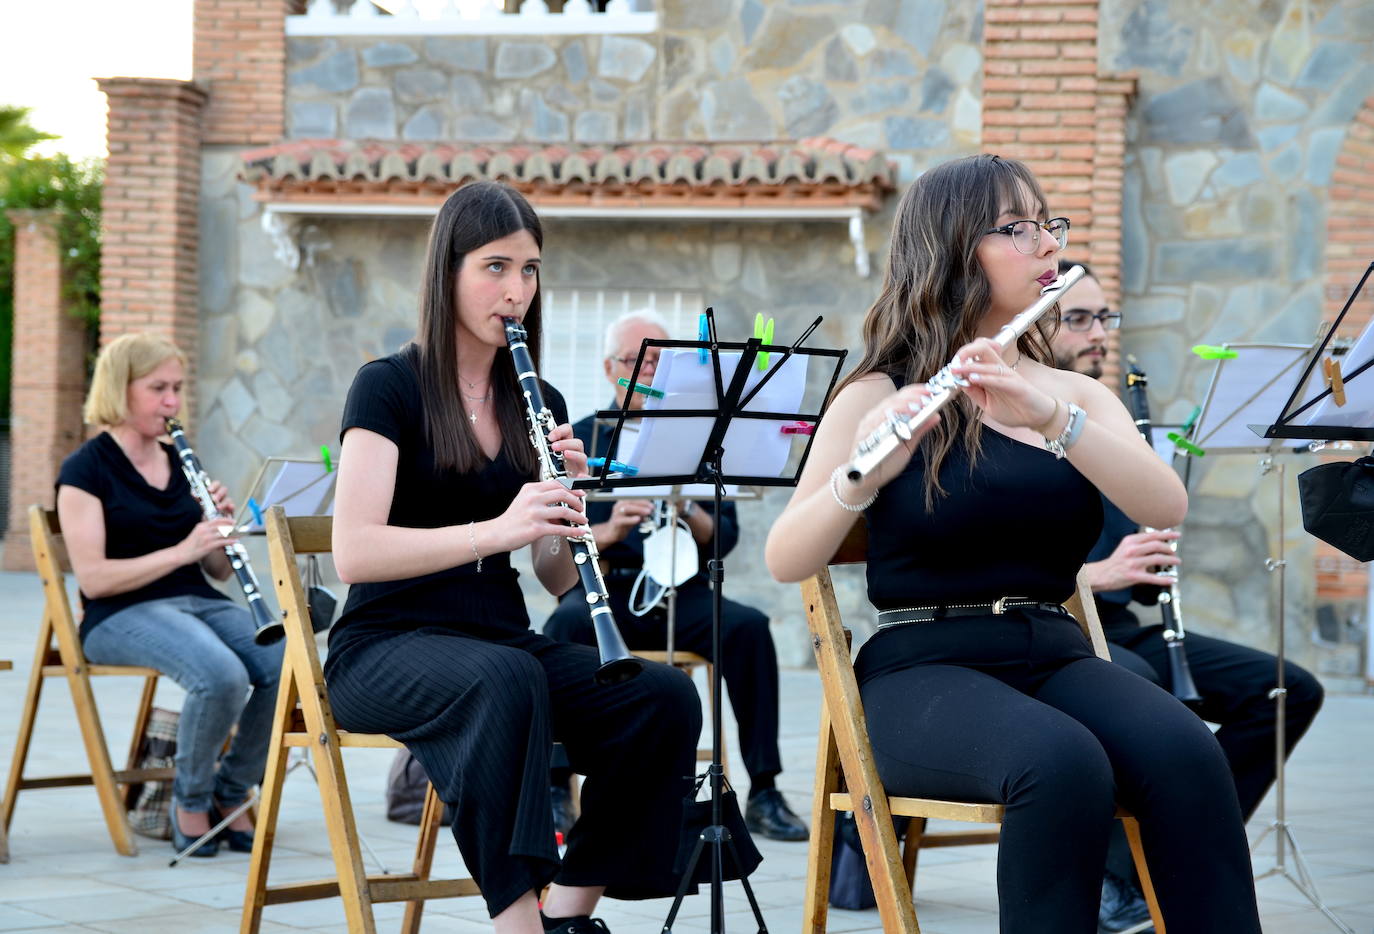 La Banda de Música de Huétor Vega tocó pasodobles clásicos y recientes.